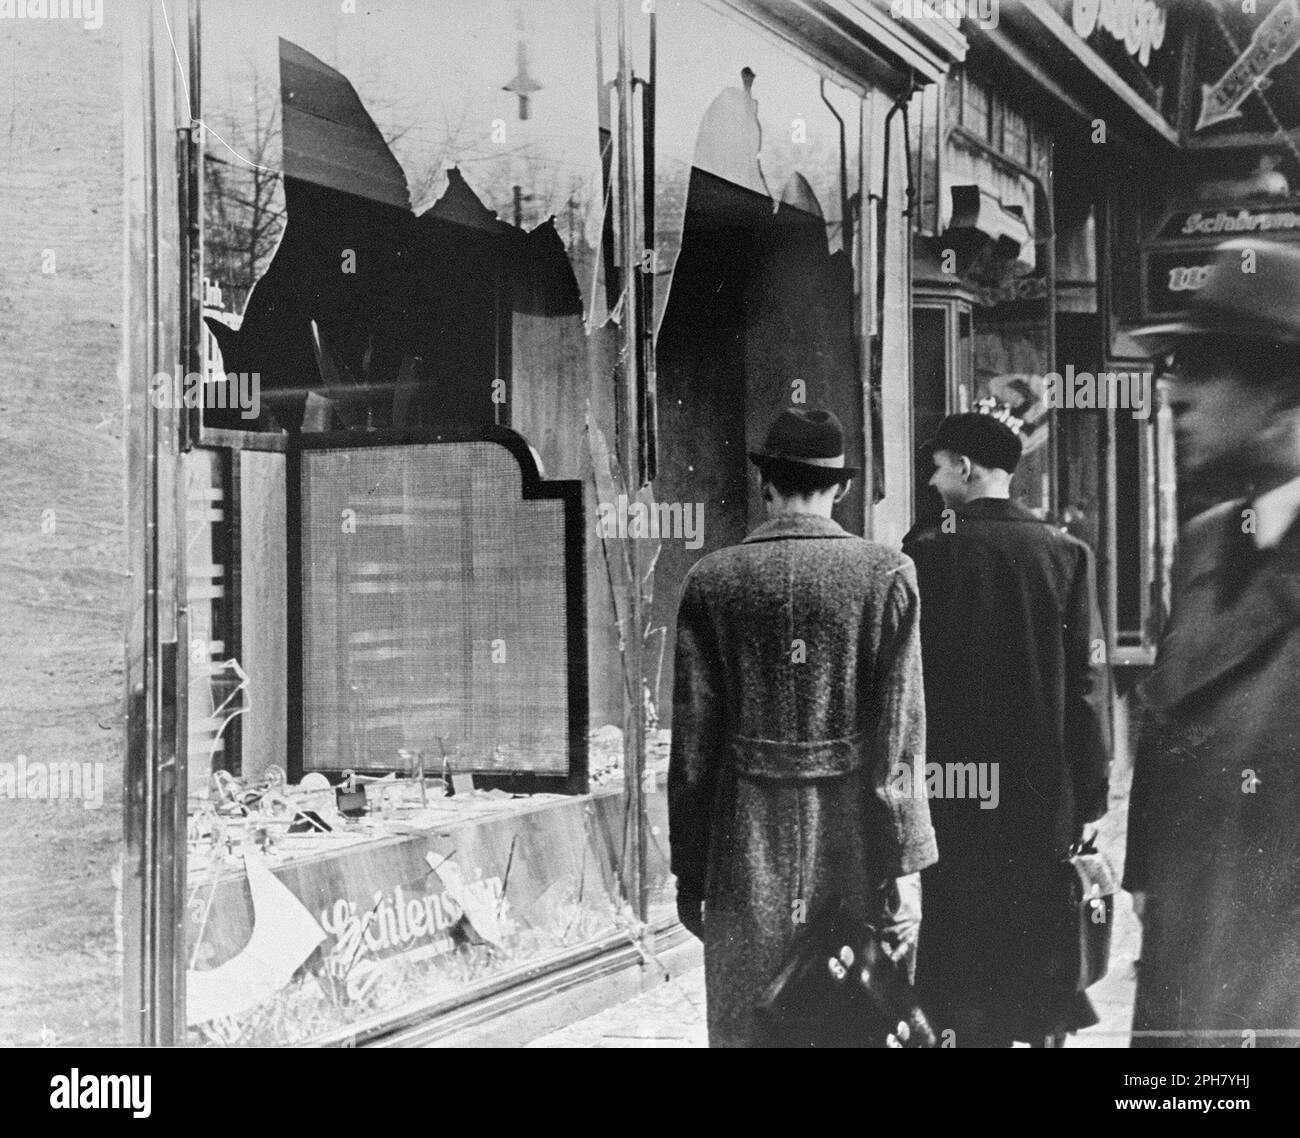 Un negozio ebraico vandalizzato in una strada a Berlino dopo Kristallnacht. Kristallnacht era un pogrom nazionale organizzato e realizzato dal partito nazista il 9th novembre 1938. Negozi e sinagoghe sono stati distrutti e la gente umiliata e picchiata mentre la polizia guardava, o addirittura aiutava. Anche se la quantità di danni e il numero di persone attaccate era piuttosto esiguo, il fatto che fosse completamente inopposito ha dimostrato ai nazisti che potevano veramente iniziare a far parte degli ebrei e, in quanto tale, è una delle pietre miliari più importanti sulla via dell'Olocausto. Foto Stock